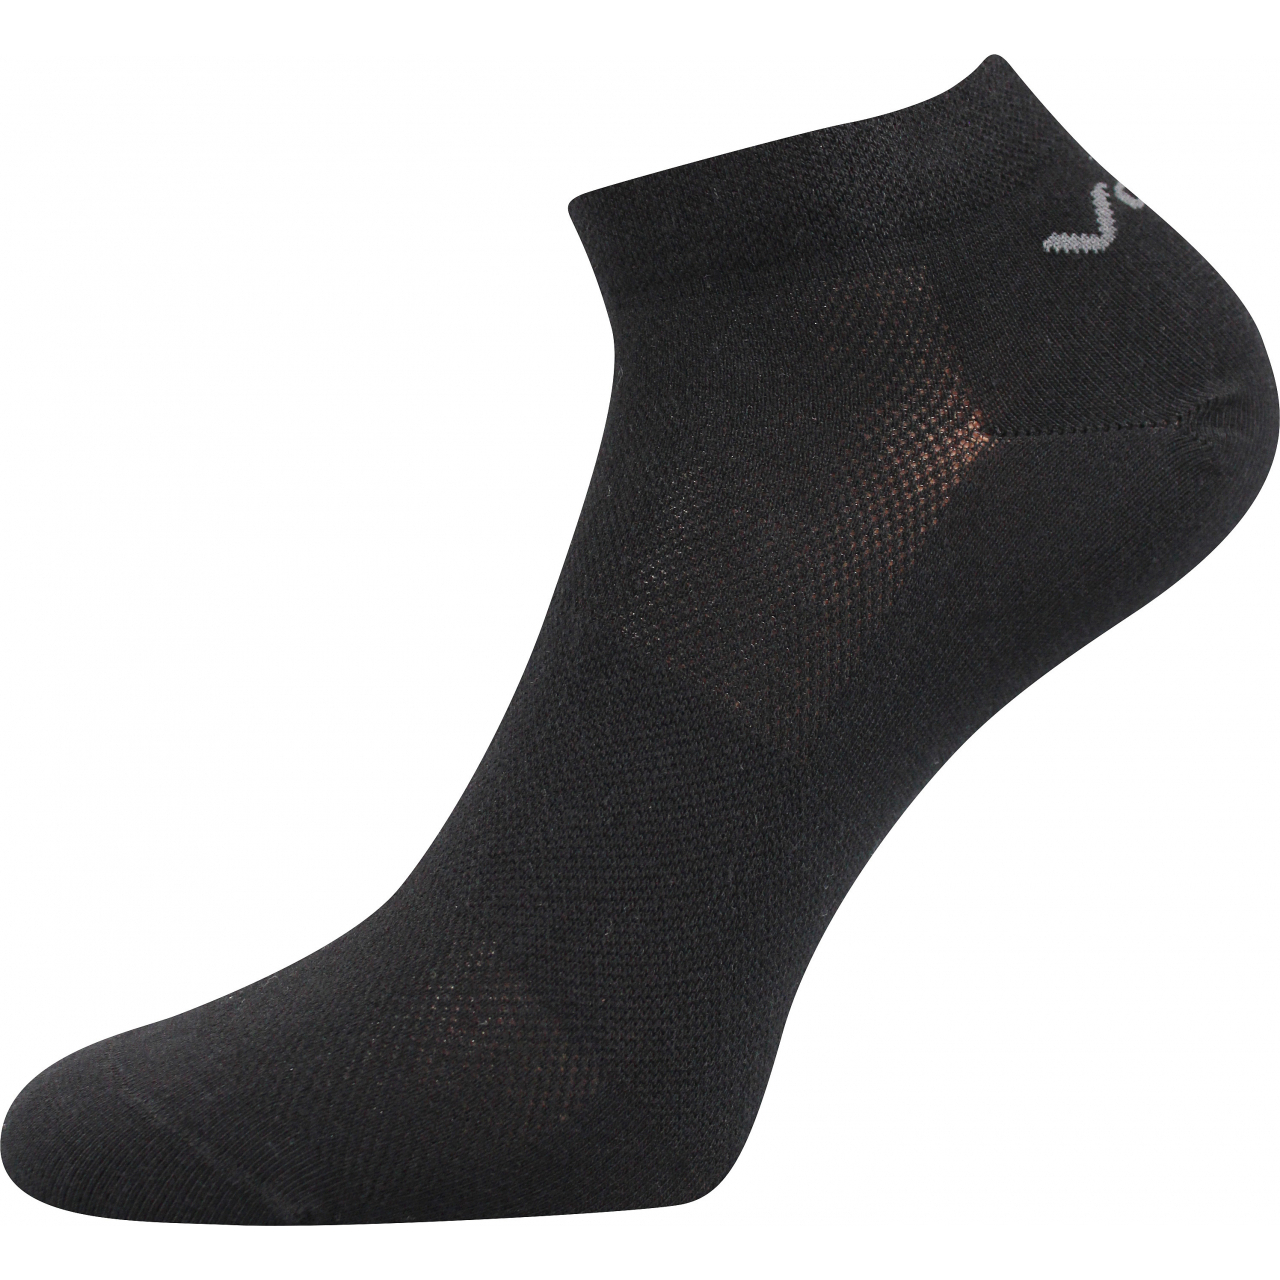 Ponožky unisex klasické Voxx Metys - černé, 43-46